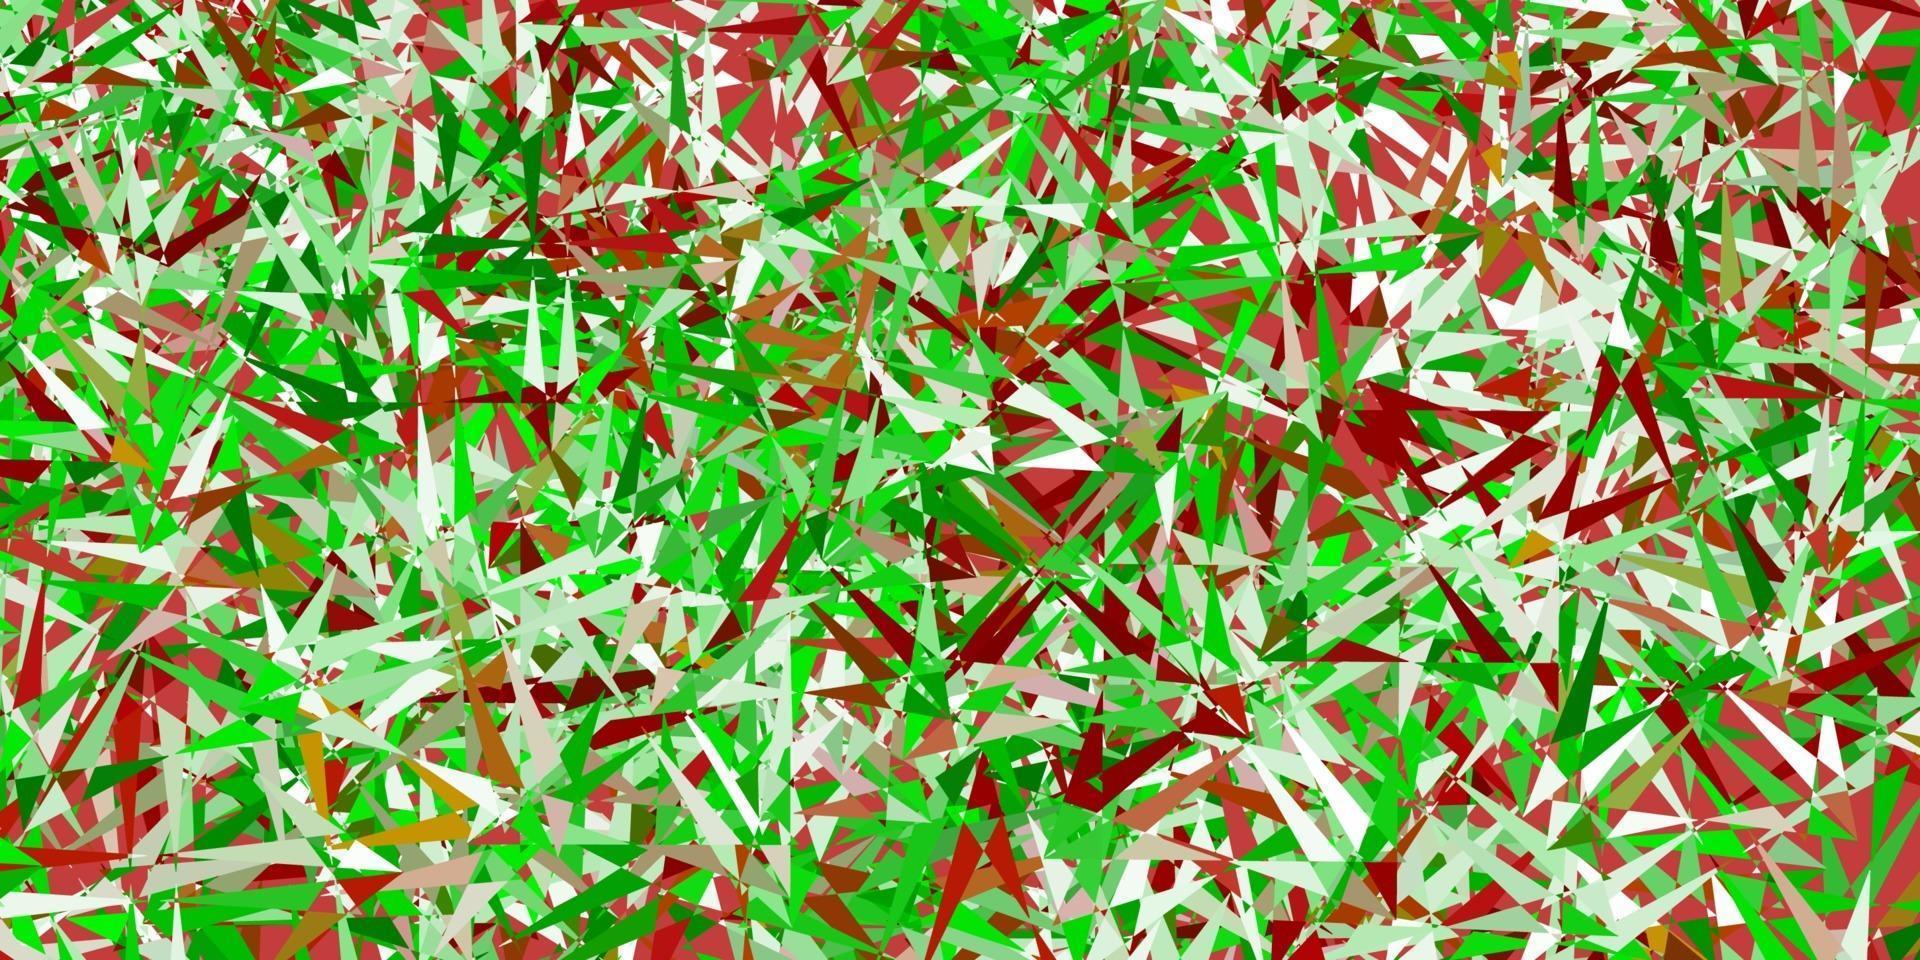 padrão de vetor verde e vermelho claro com formas poligonais.